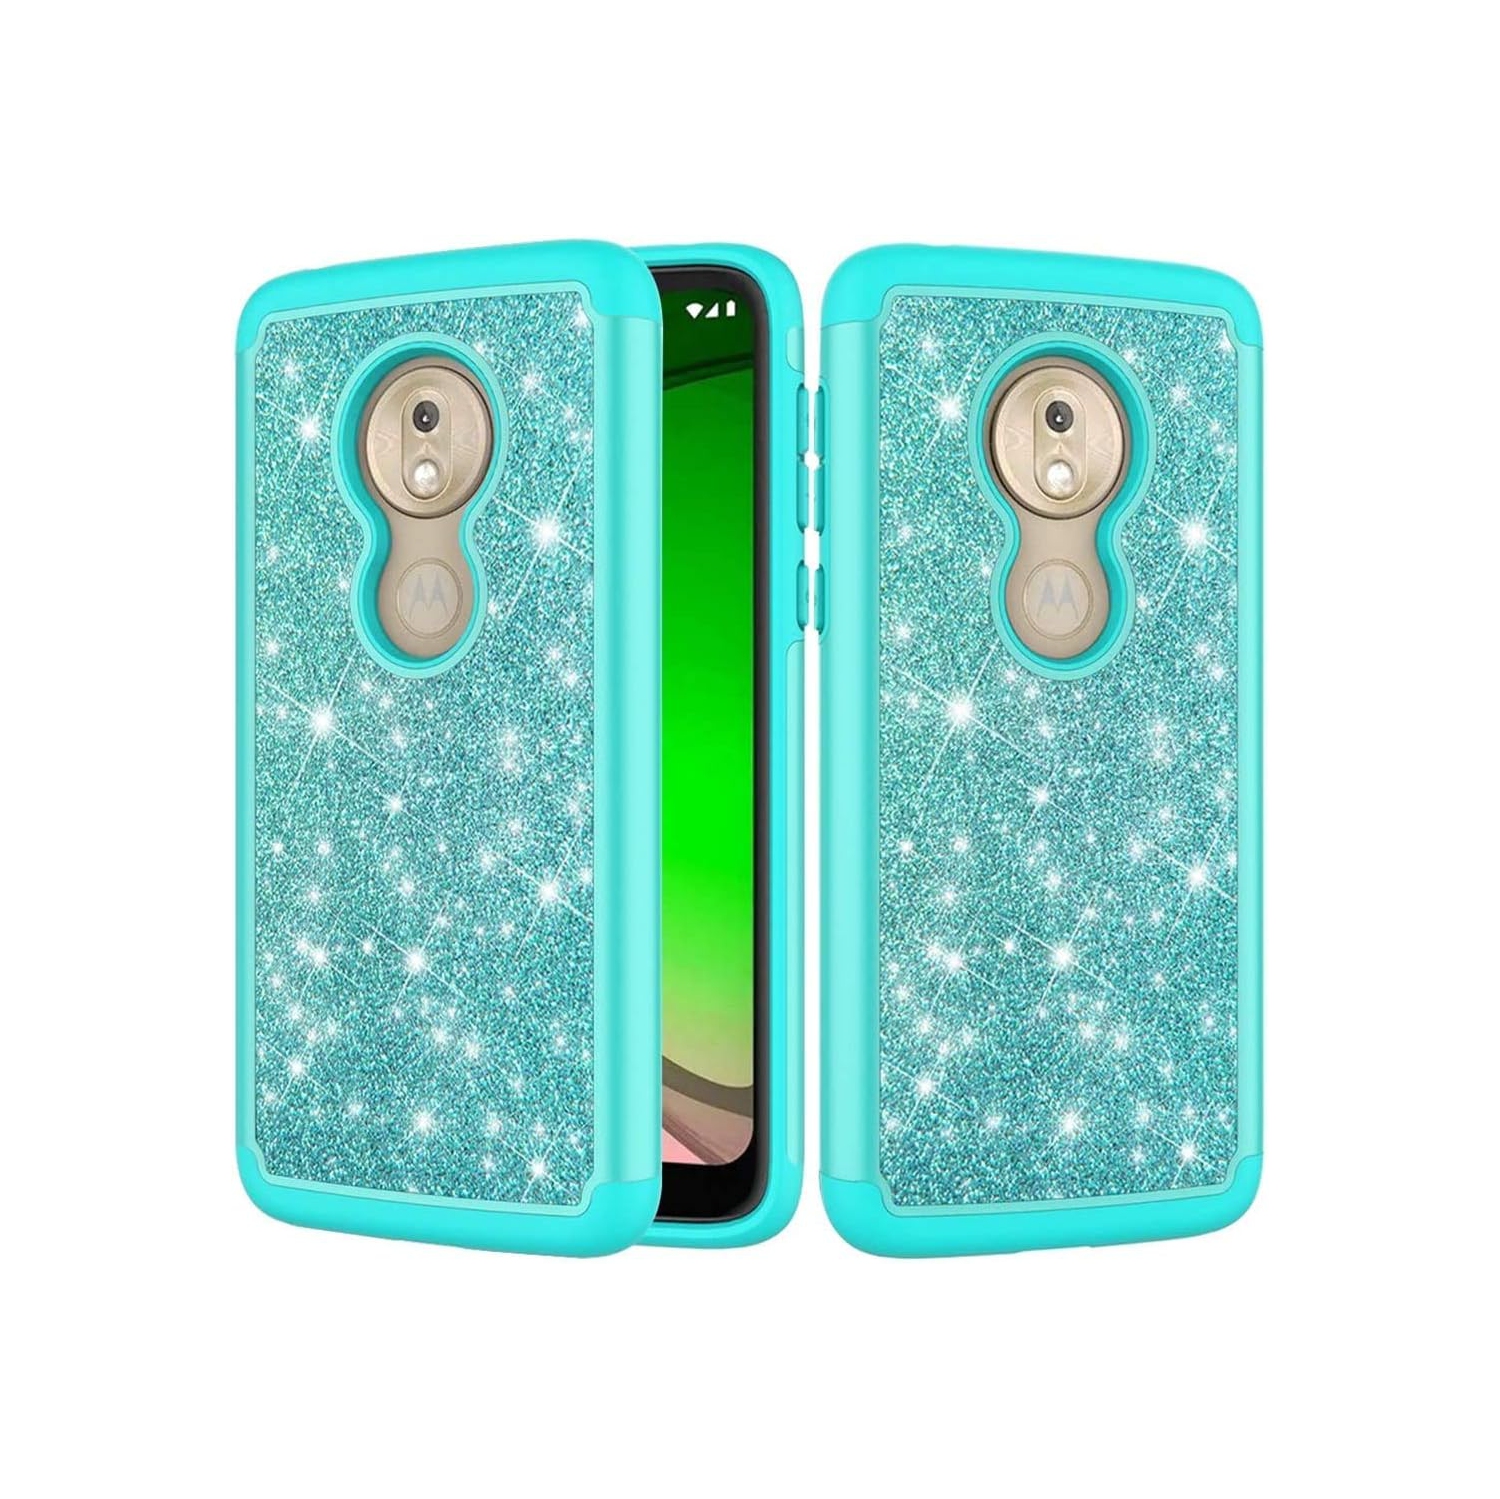 Moto G7 Play Case, Moto G7 Optimo Case for Girls, Glitter Bling Sparkle Defender Heavy Duty Phone Cover Cases